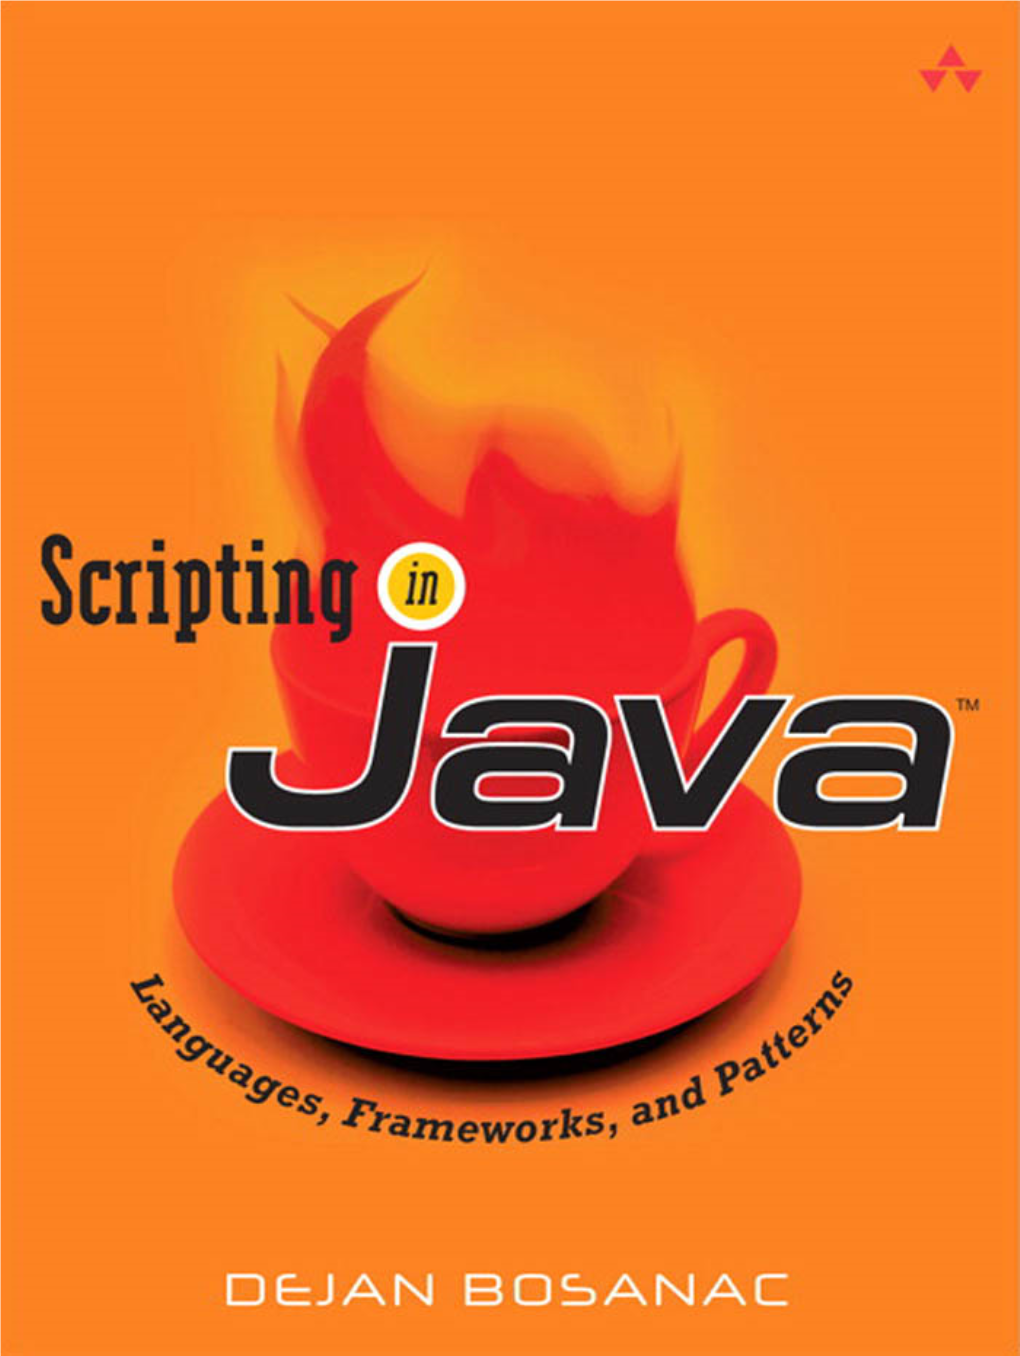 Scripting in Java by Dojan Bosanac.Pdf